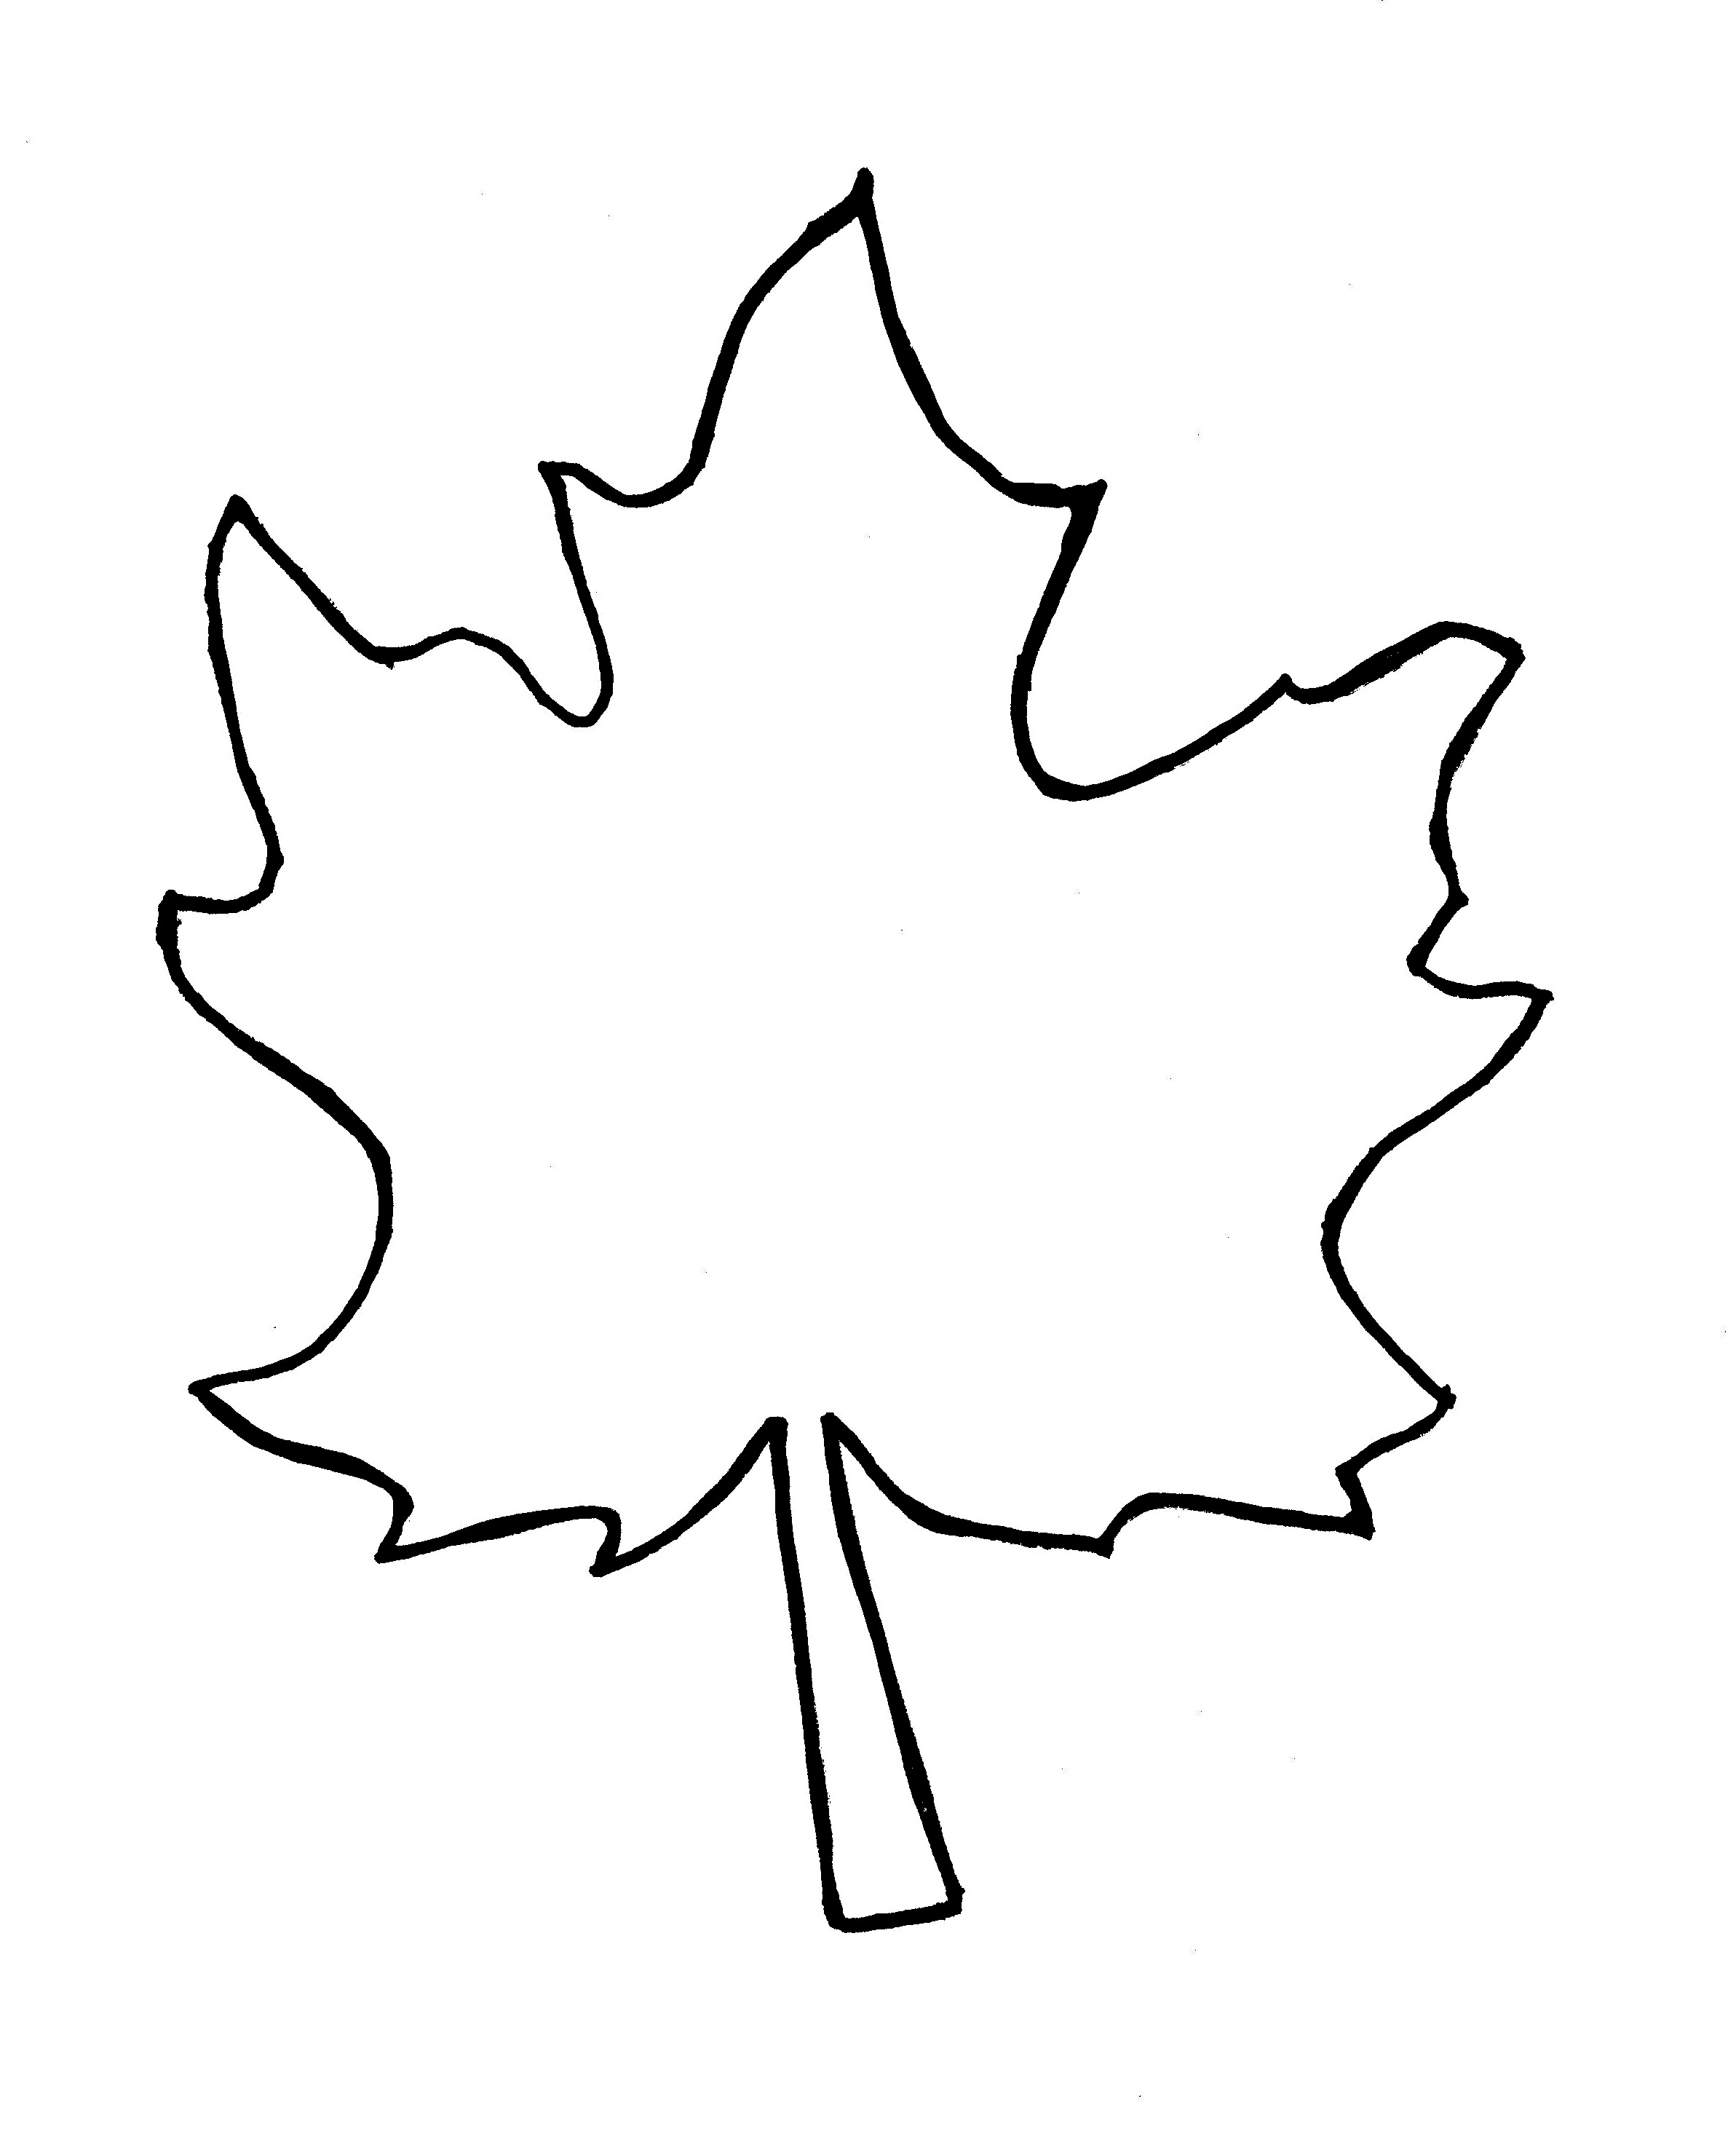 Leaf clipart outline 